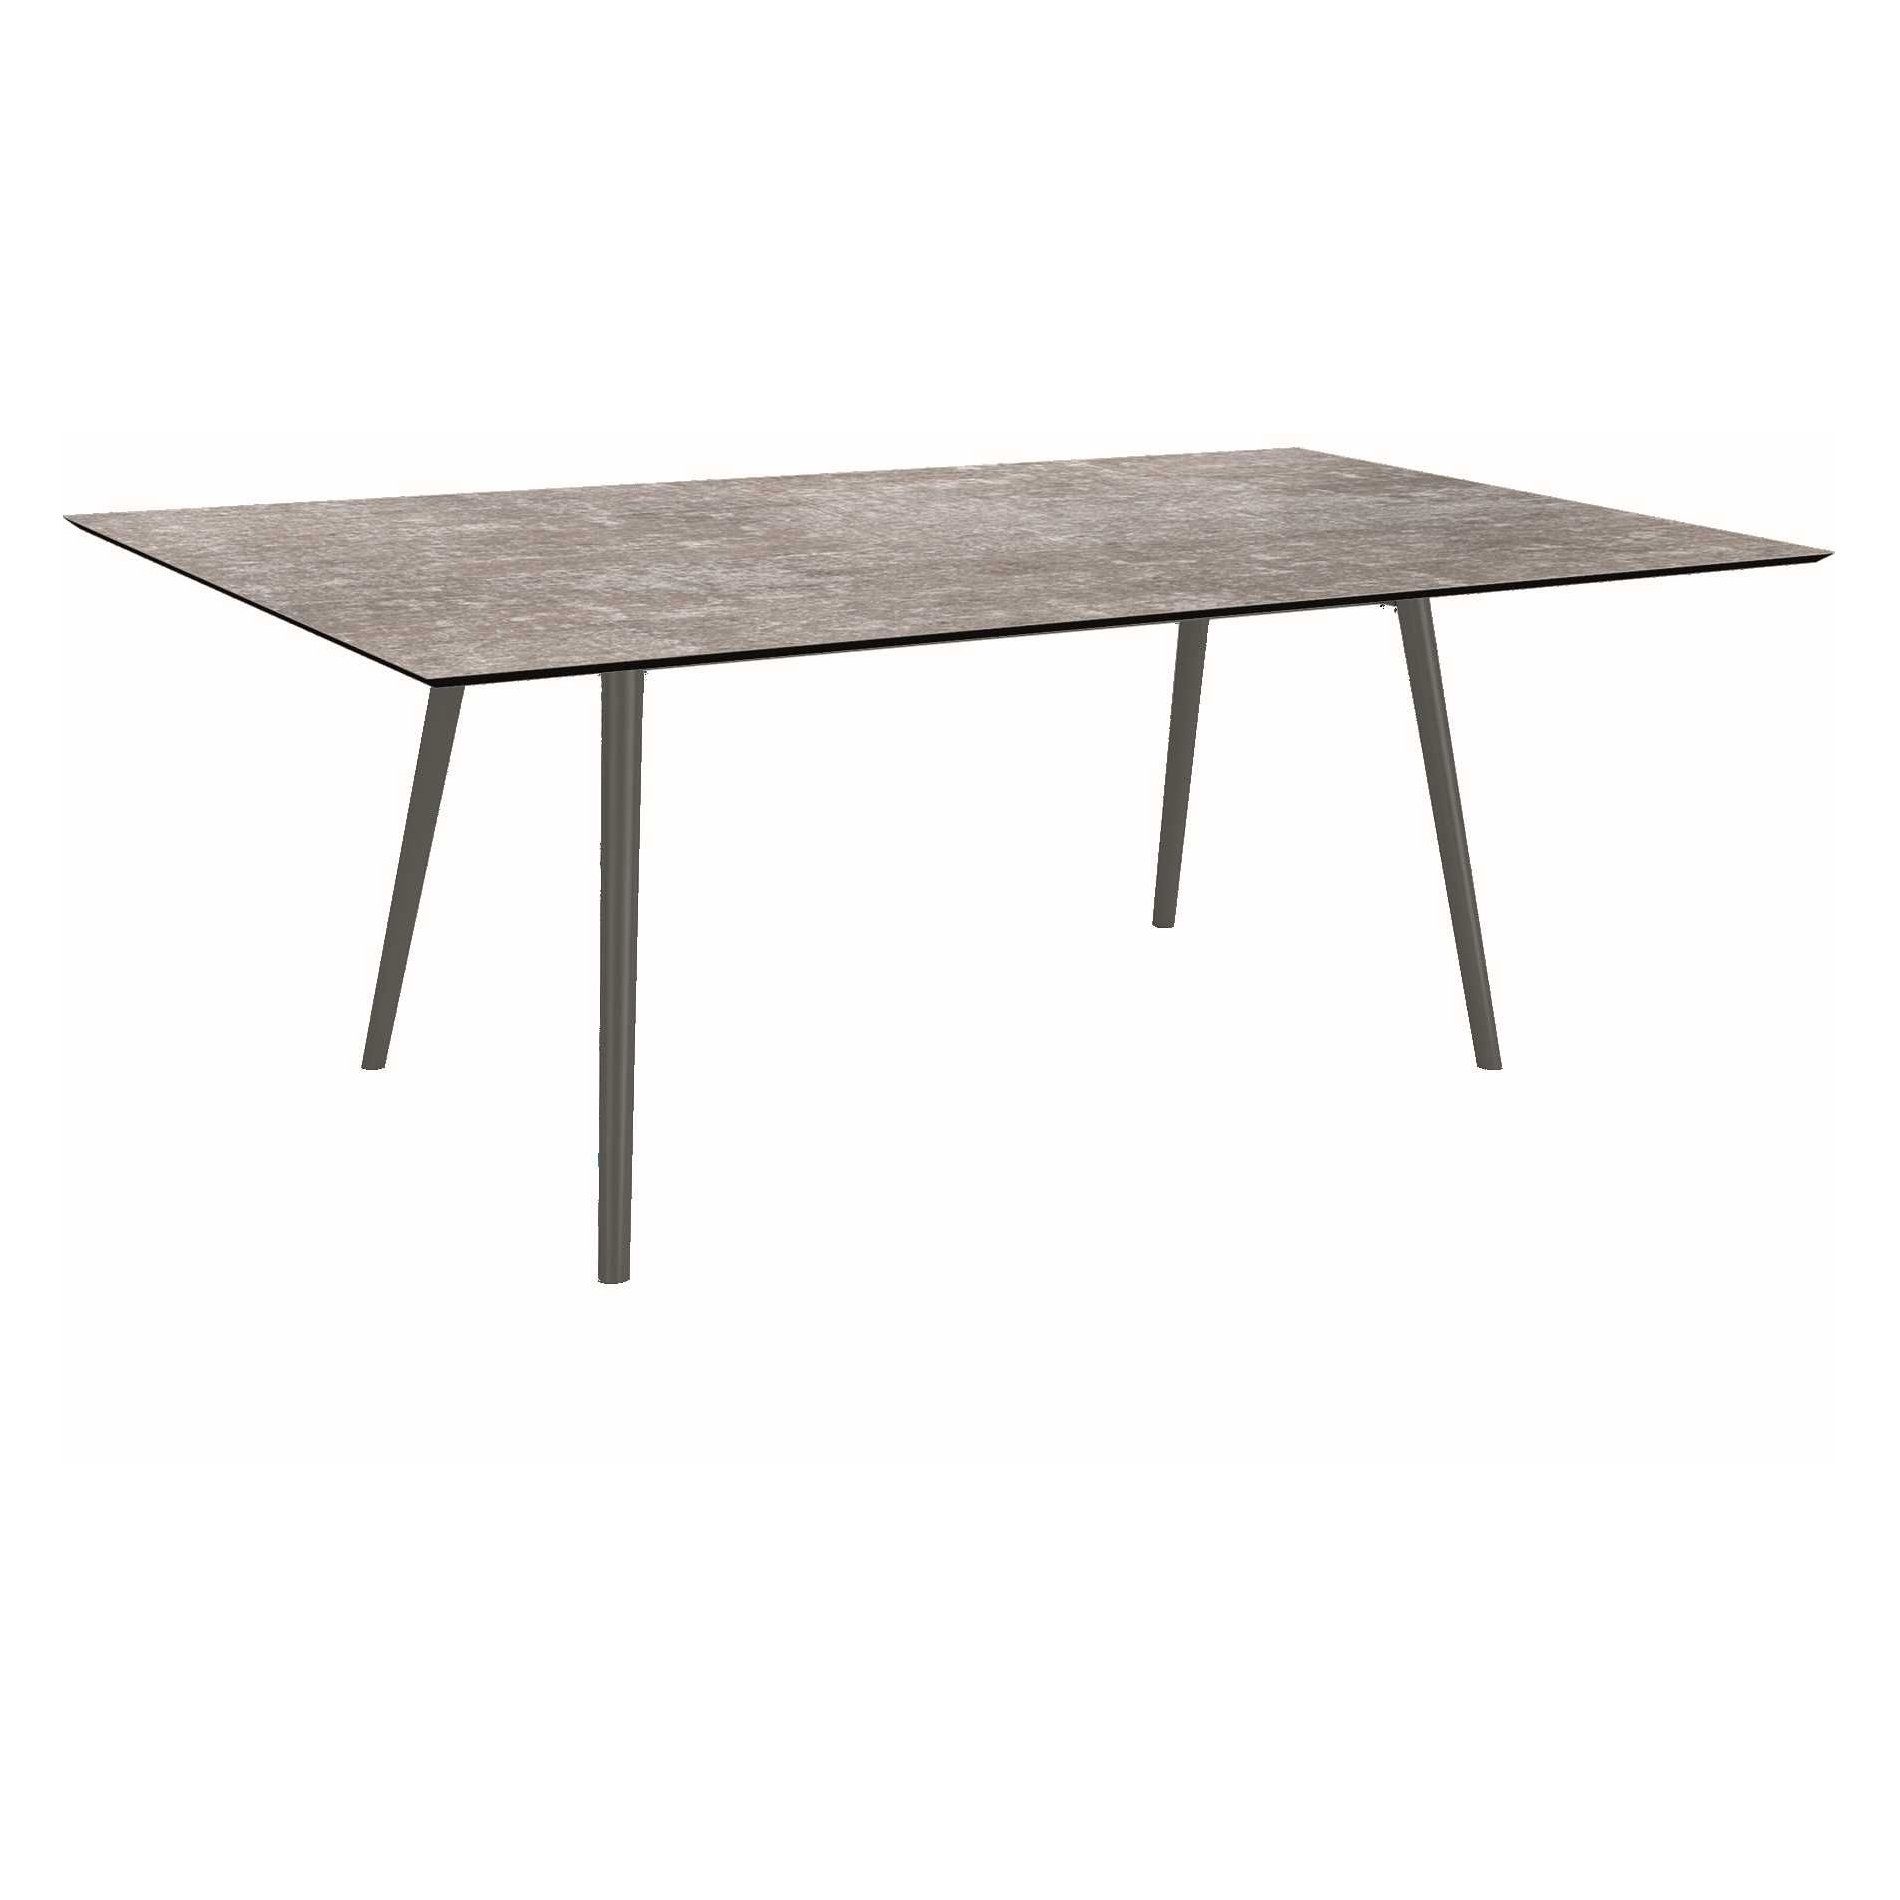 Stern Tisch "Interno", Größe 180x100cm, Alu anthrazit, Rundrohr, Tischplatte HPL Metallic Grau